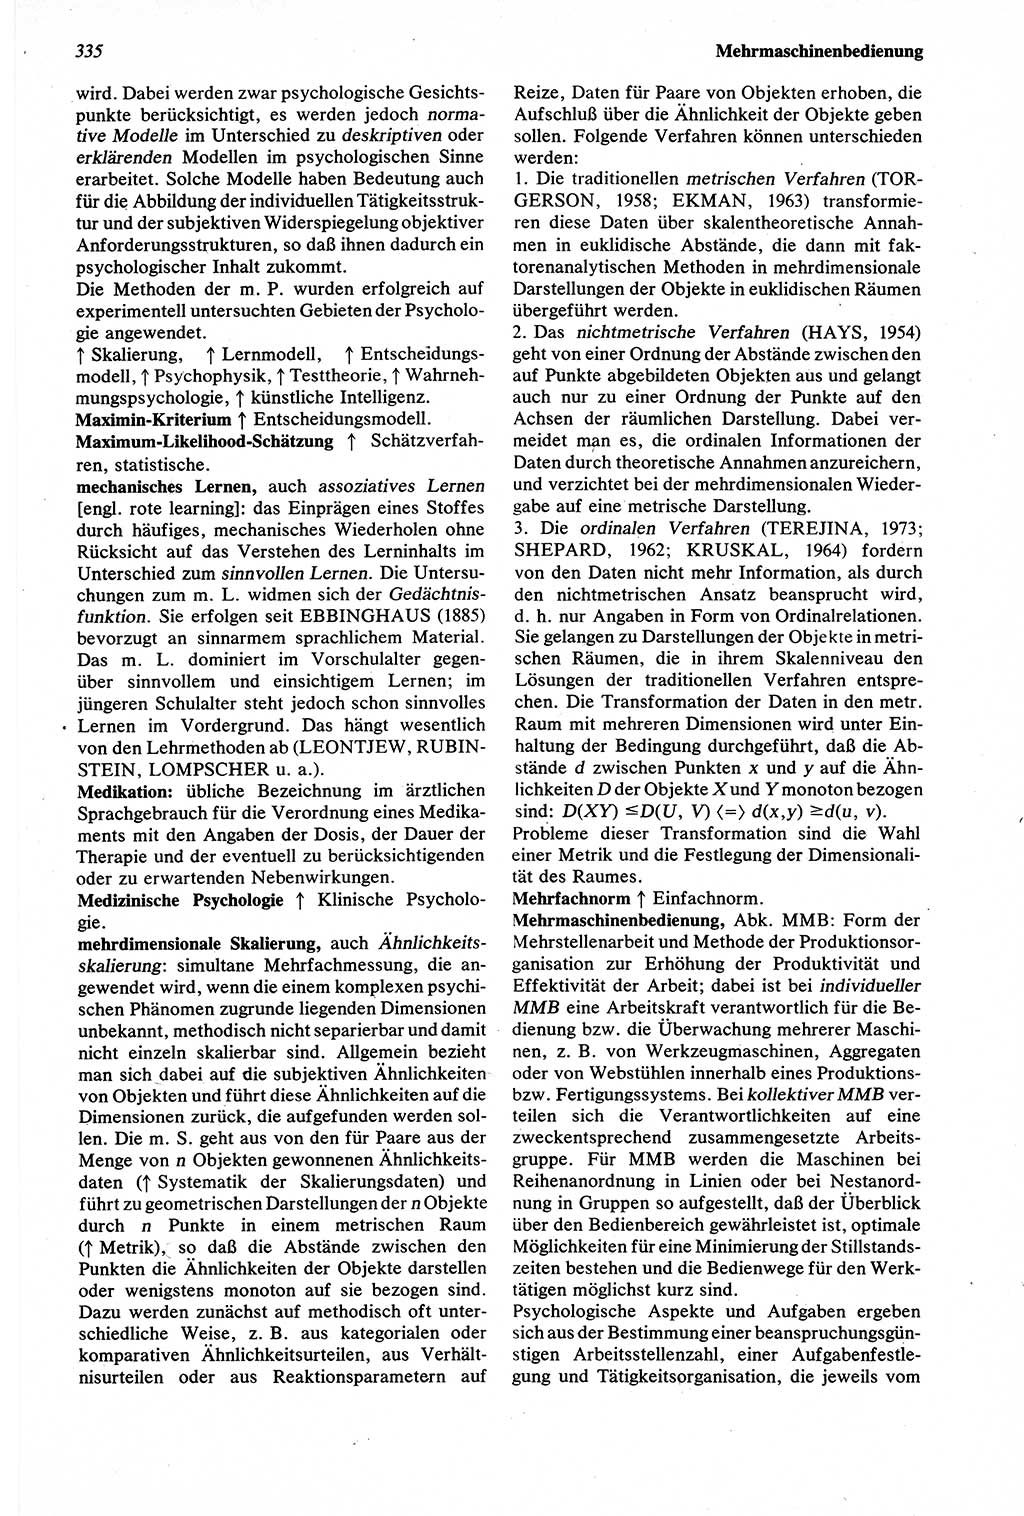 Wörterbuch der Psychologie [Deutsche Demokratische Republik (DDR)] 1976, Seite 335 (Wb. Psych. DDR 1976, S. 335)